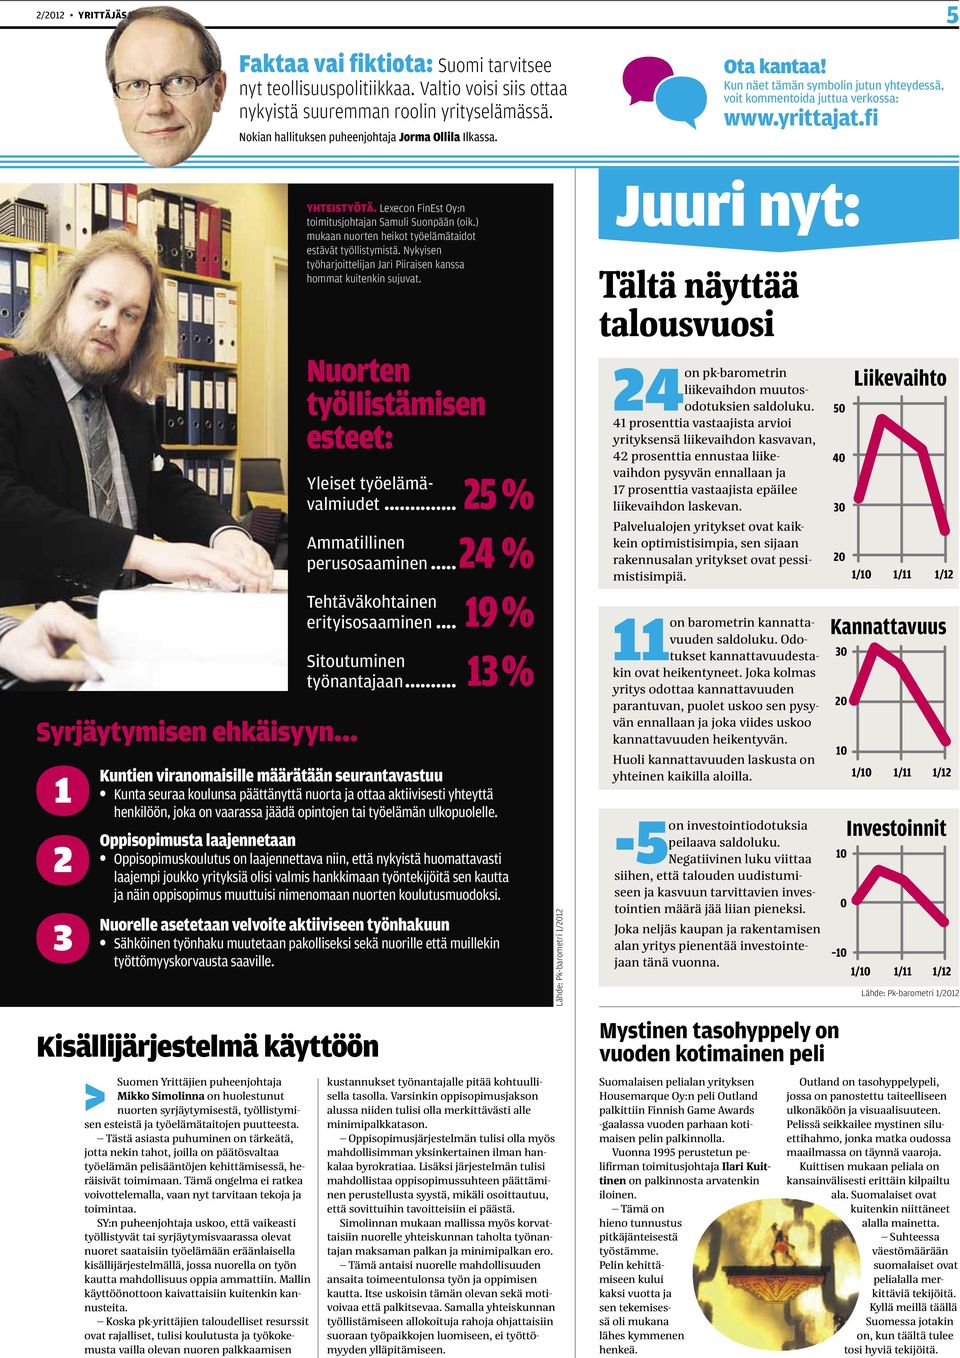 fi Syrjäytymisen ehkäisyyn 1 2 3 > Suomen Yrittäjien puheenjohtaja Mikko Simolinna on huolestunut nuorten syrjäytymisestä, työllistymisen esteistä ja työelämätaitojen puutteesta.